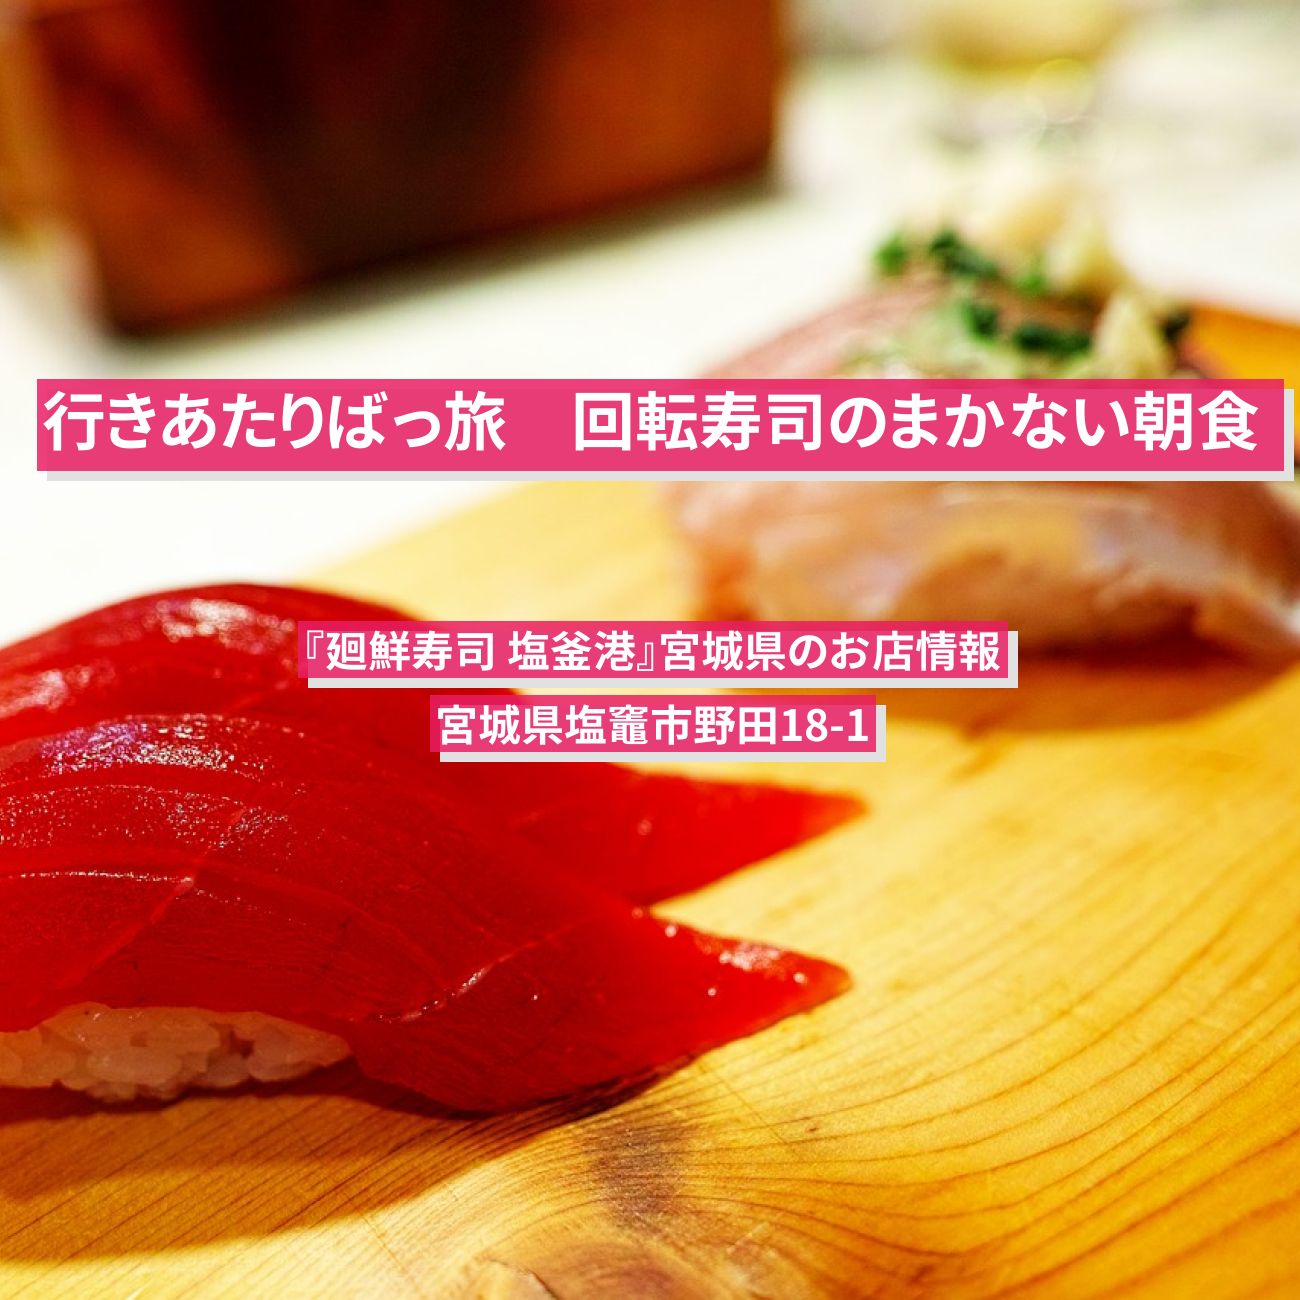 【行きあたりばっ旅】回転寿司のまかない朝食『廻鮮寿司 塩釜港』宮城県のお店情報